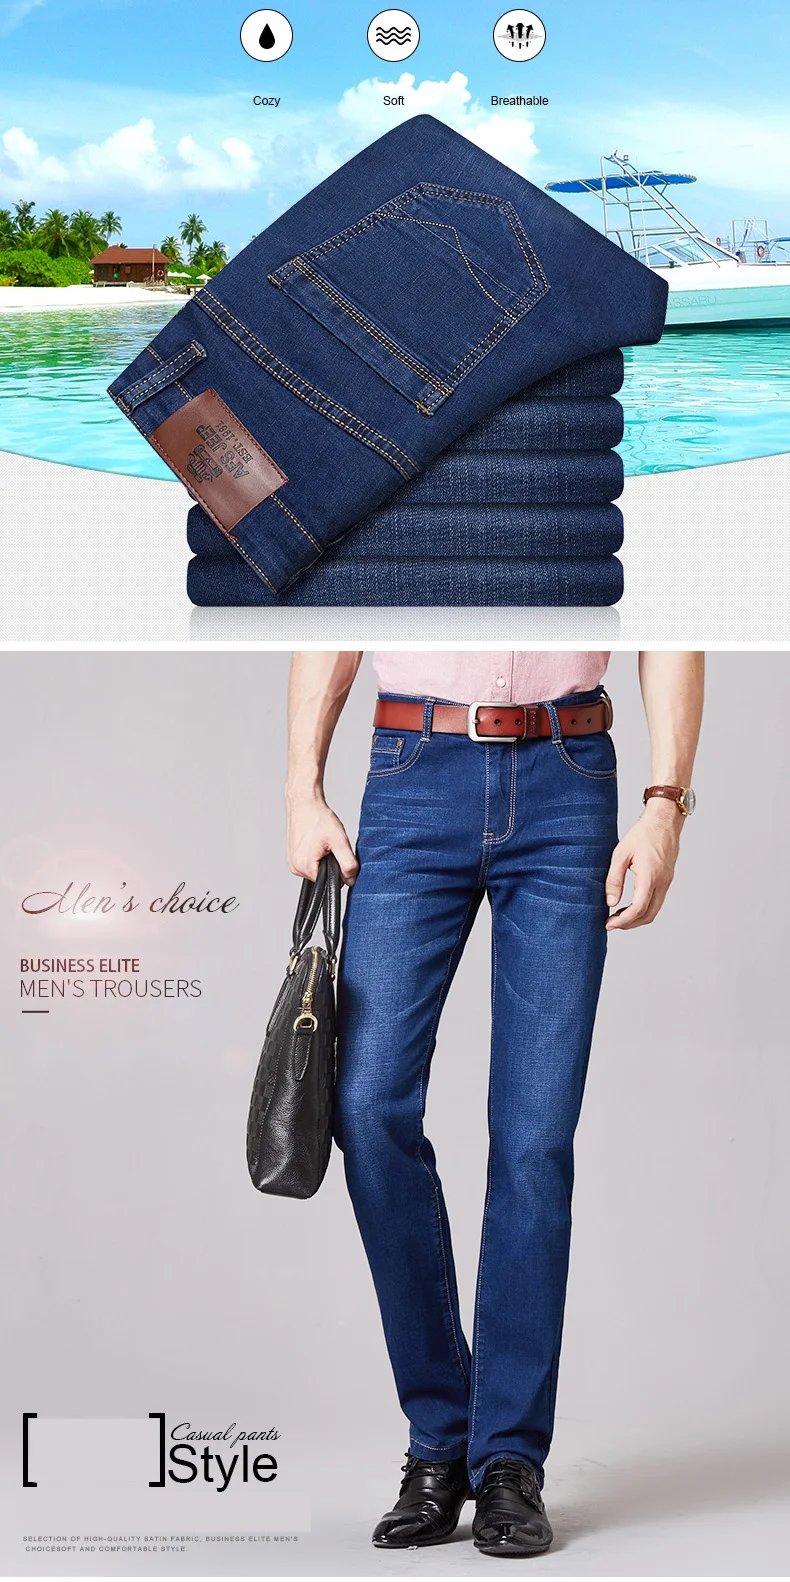 Бренд Бесплатная доставка 2018 осень Для Мужчин's Джинсы для женщин Бизнес повседневные джинсы Для мужчин прямо Жан Брюки для девочек модные